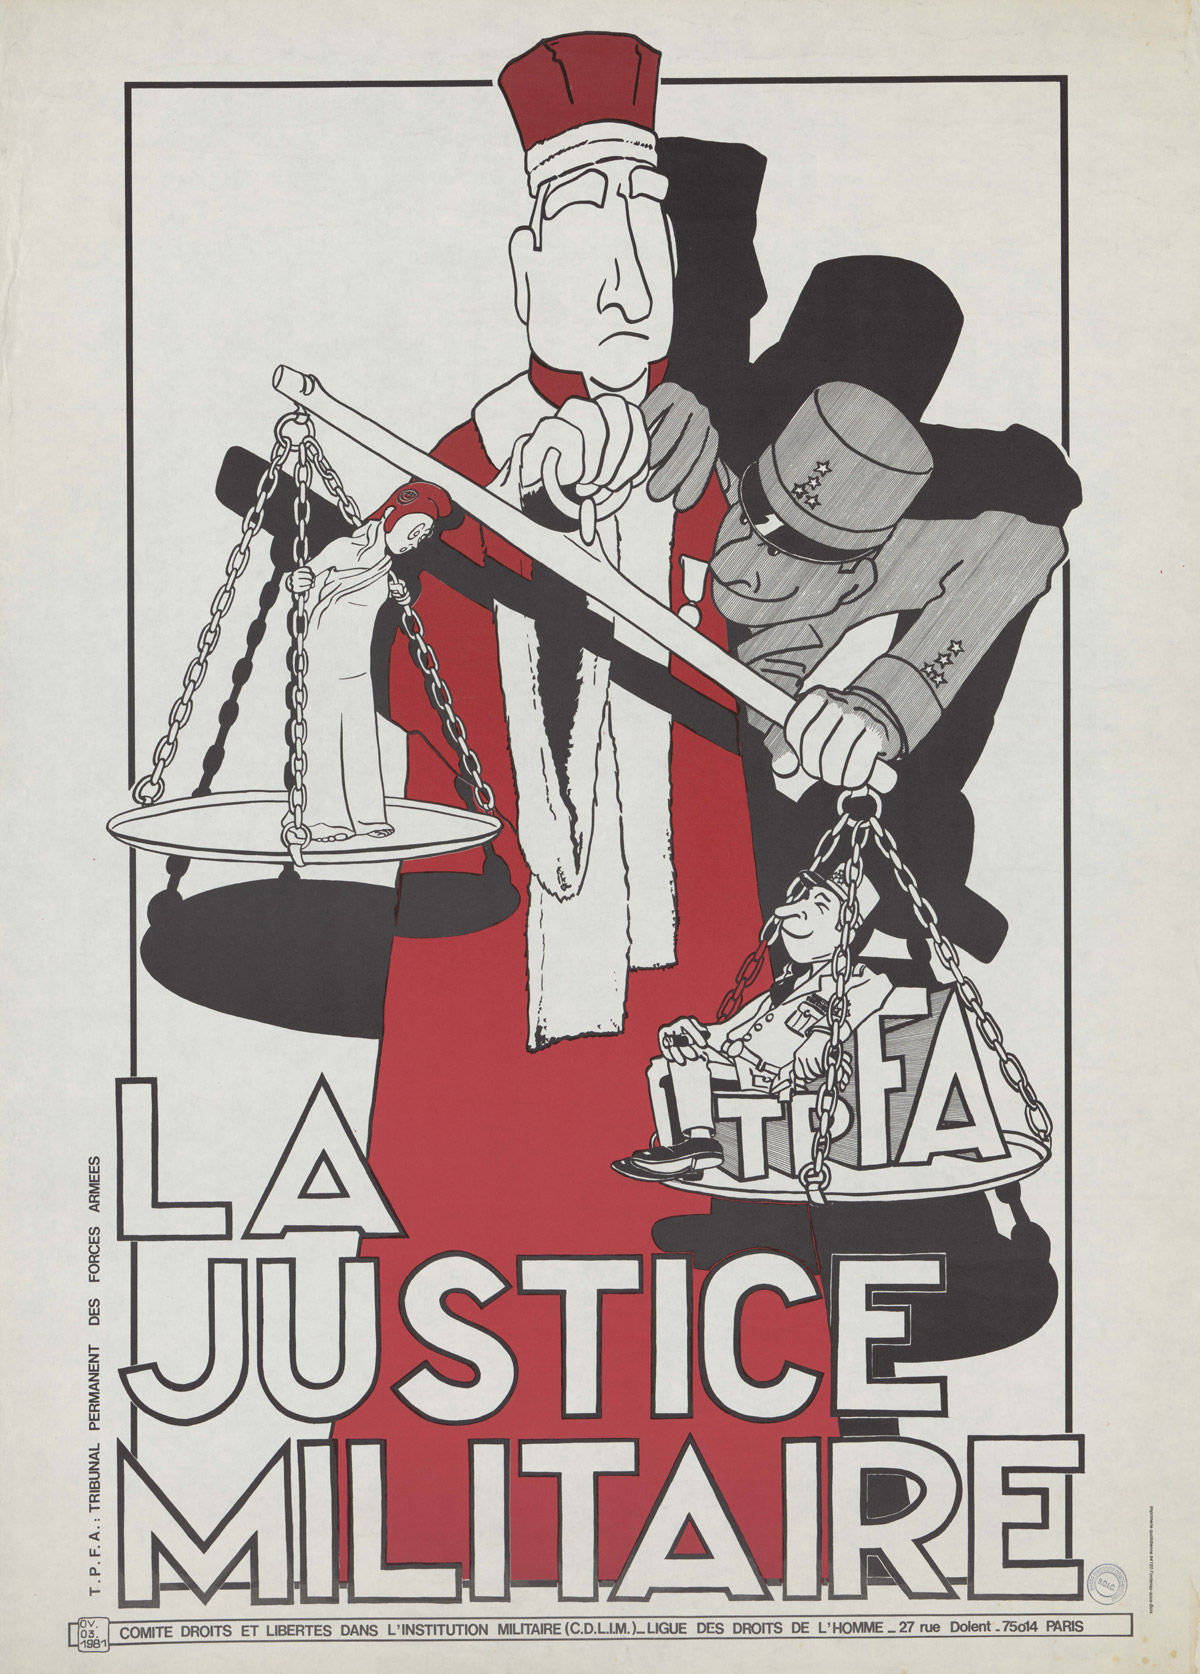 La justice militaire, affiche, 1981